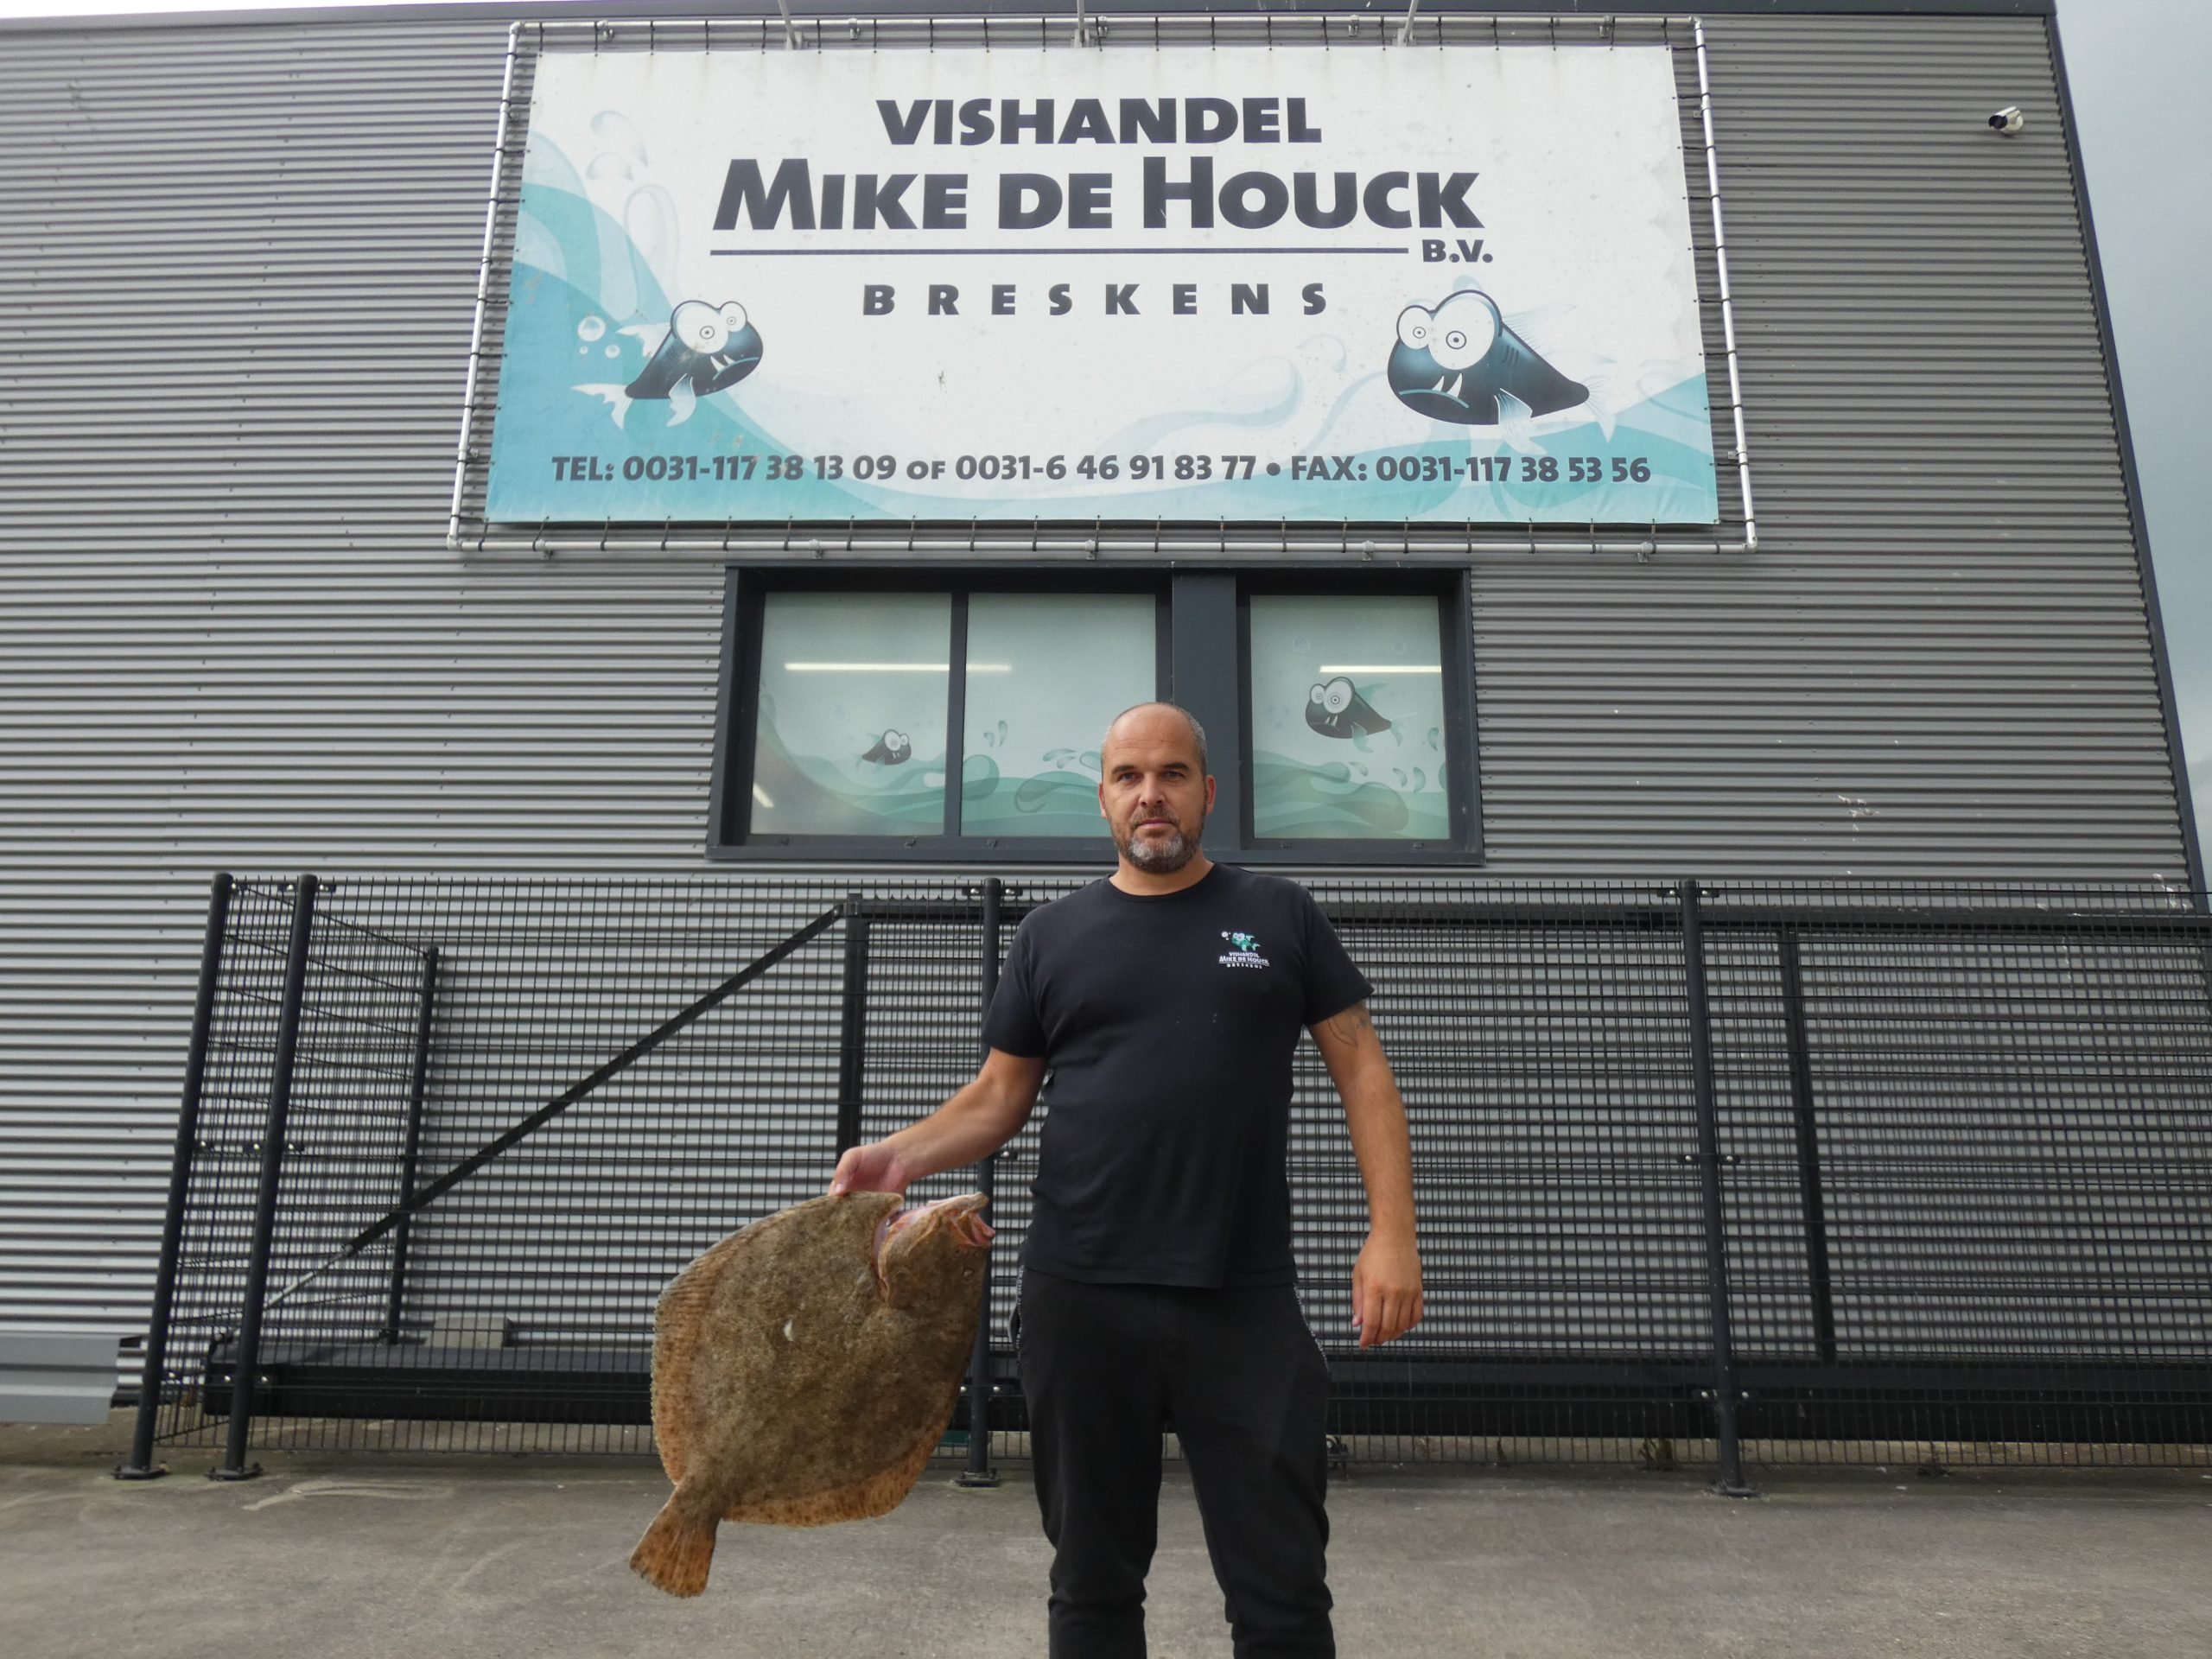 Vishandel Mike de Houck in Breskens